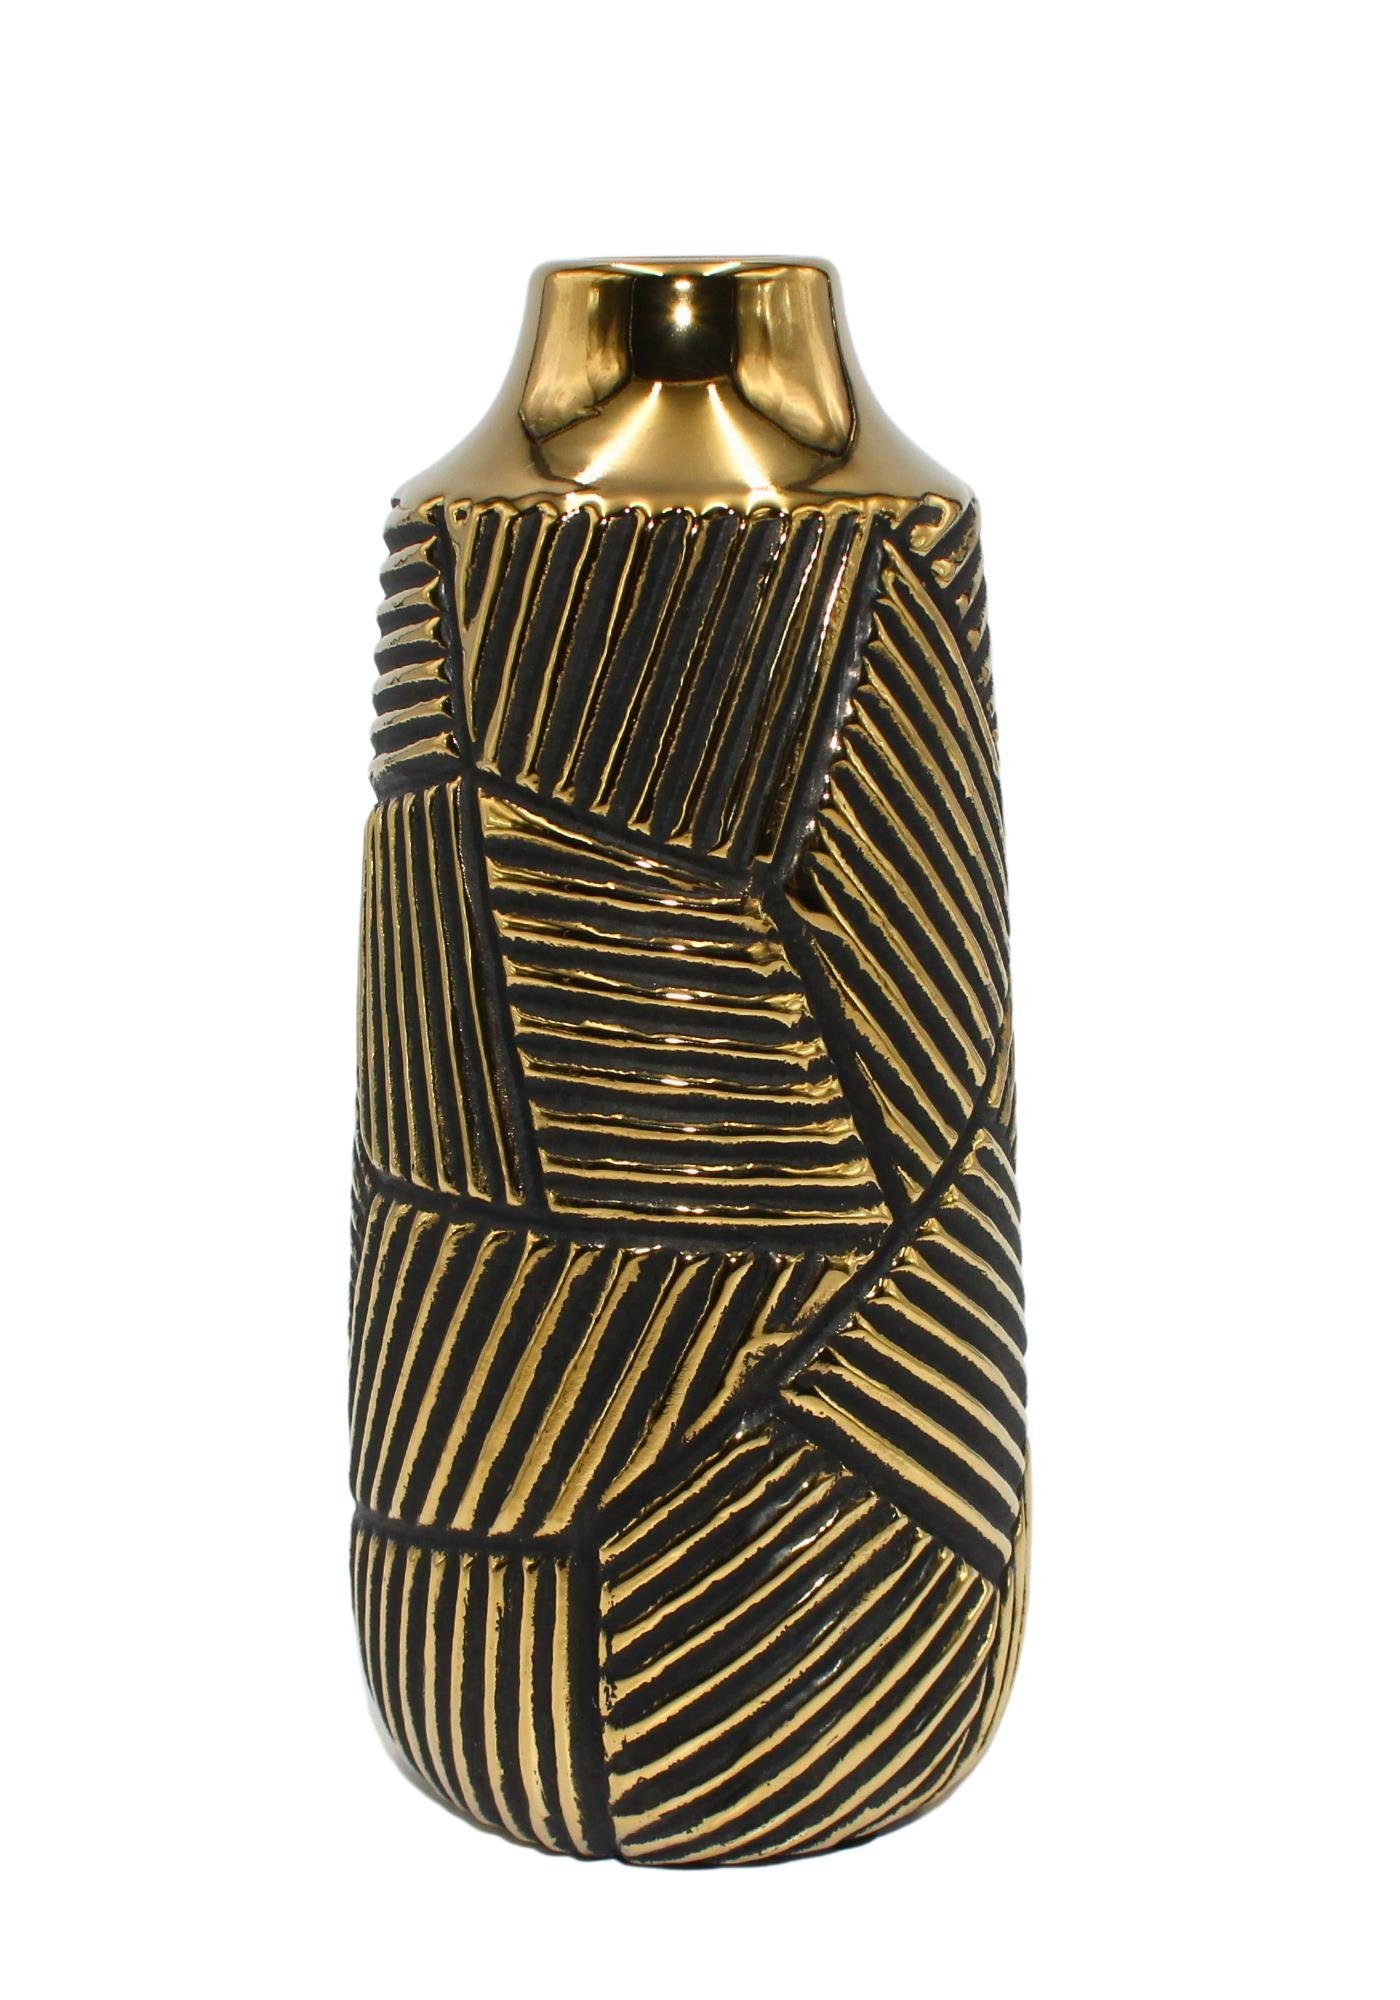 verschiedene (1 Vase hochwertige Keramik Vase, Dekohelden24 schmale gold-schwarz, in Edle St) 1 Dekovase